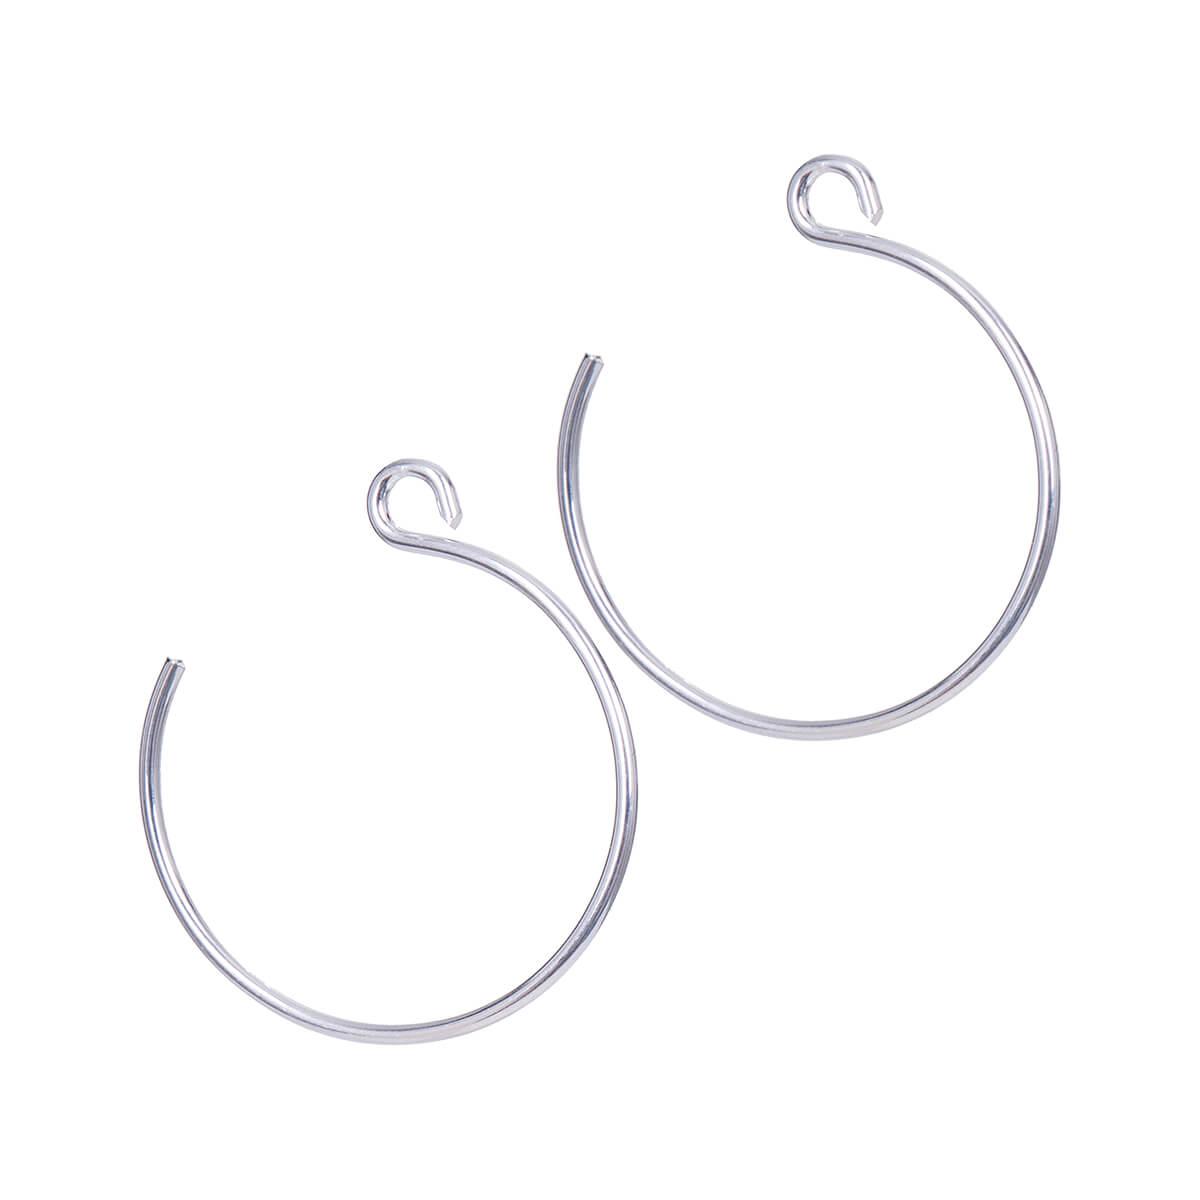  Backward Loop Medium Silver Earrings